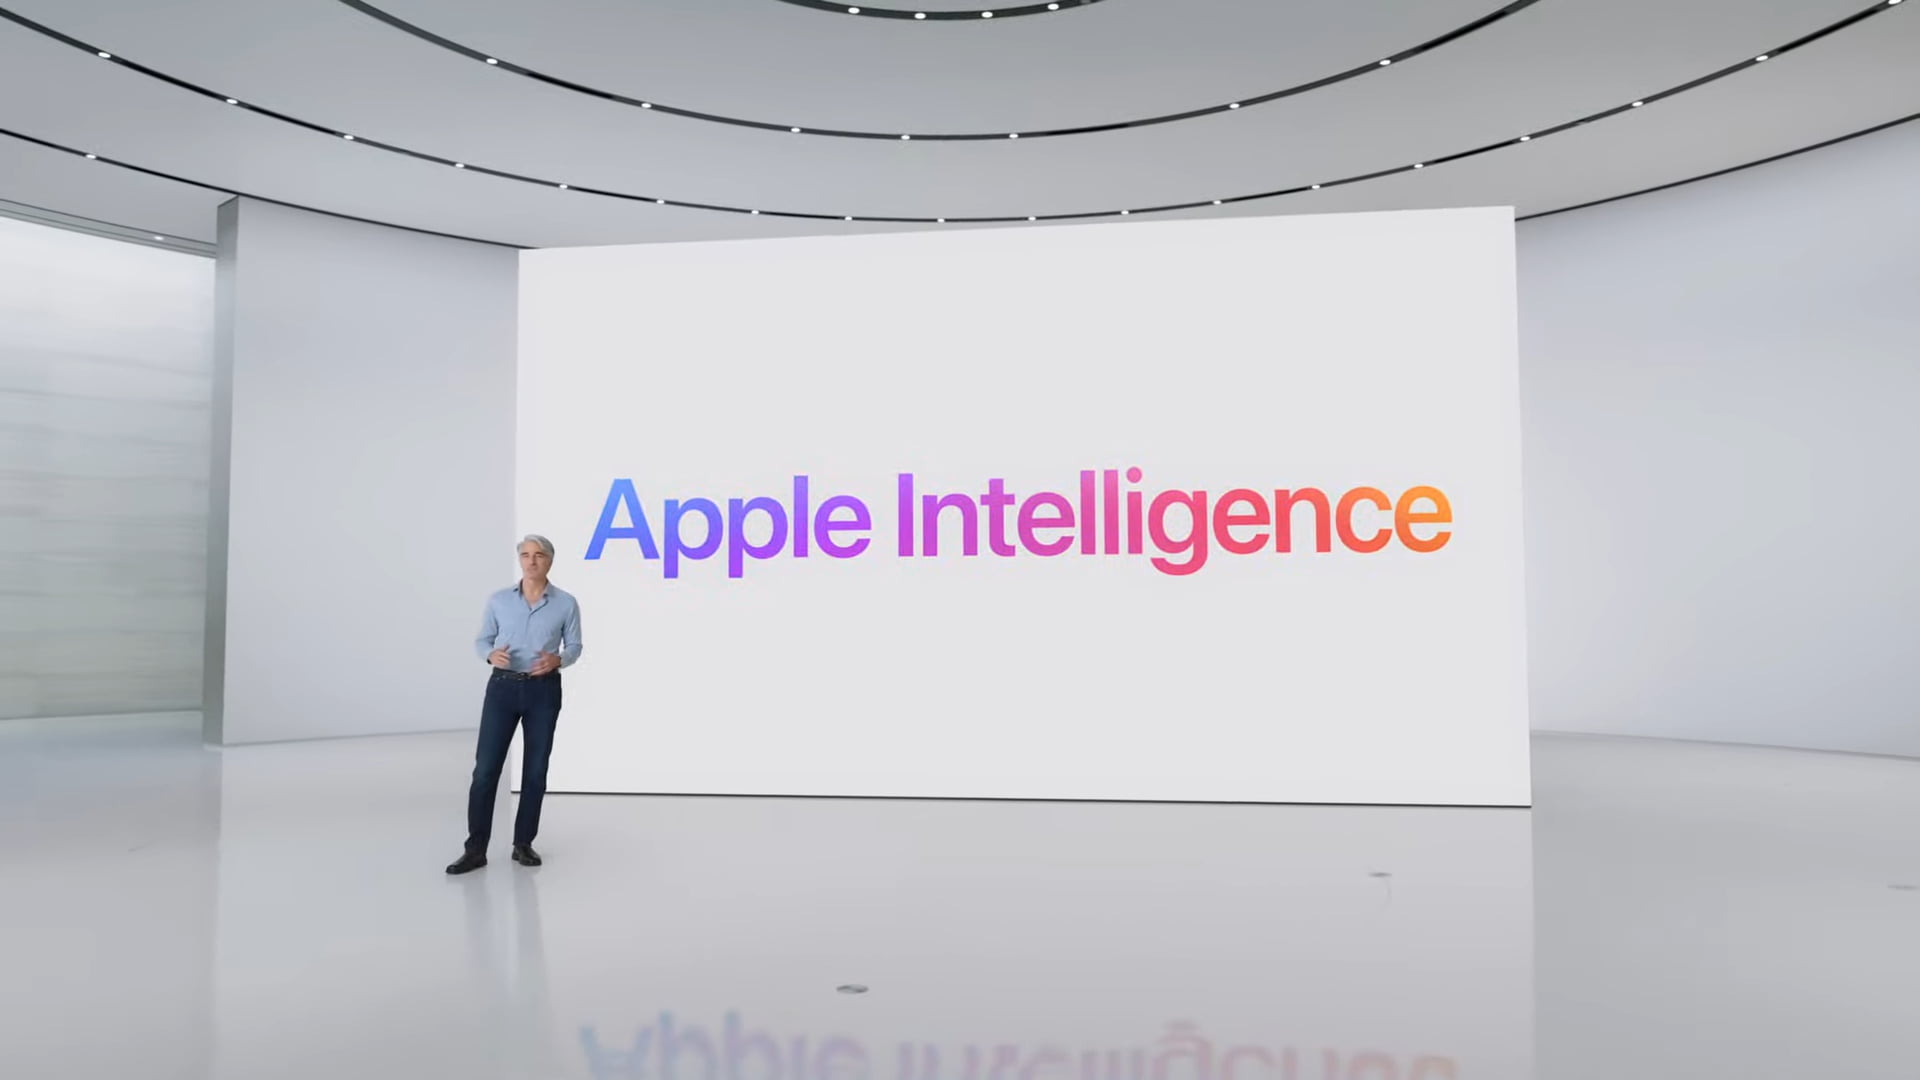 Mężczyzna stojący na scenie z napisem "Apple Intelligence" na dużym ekranie za nim.